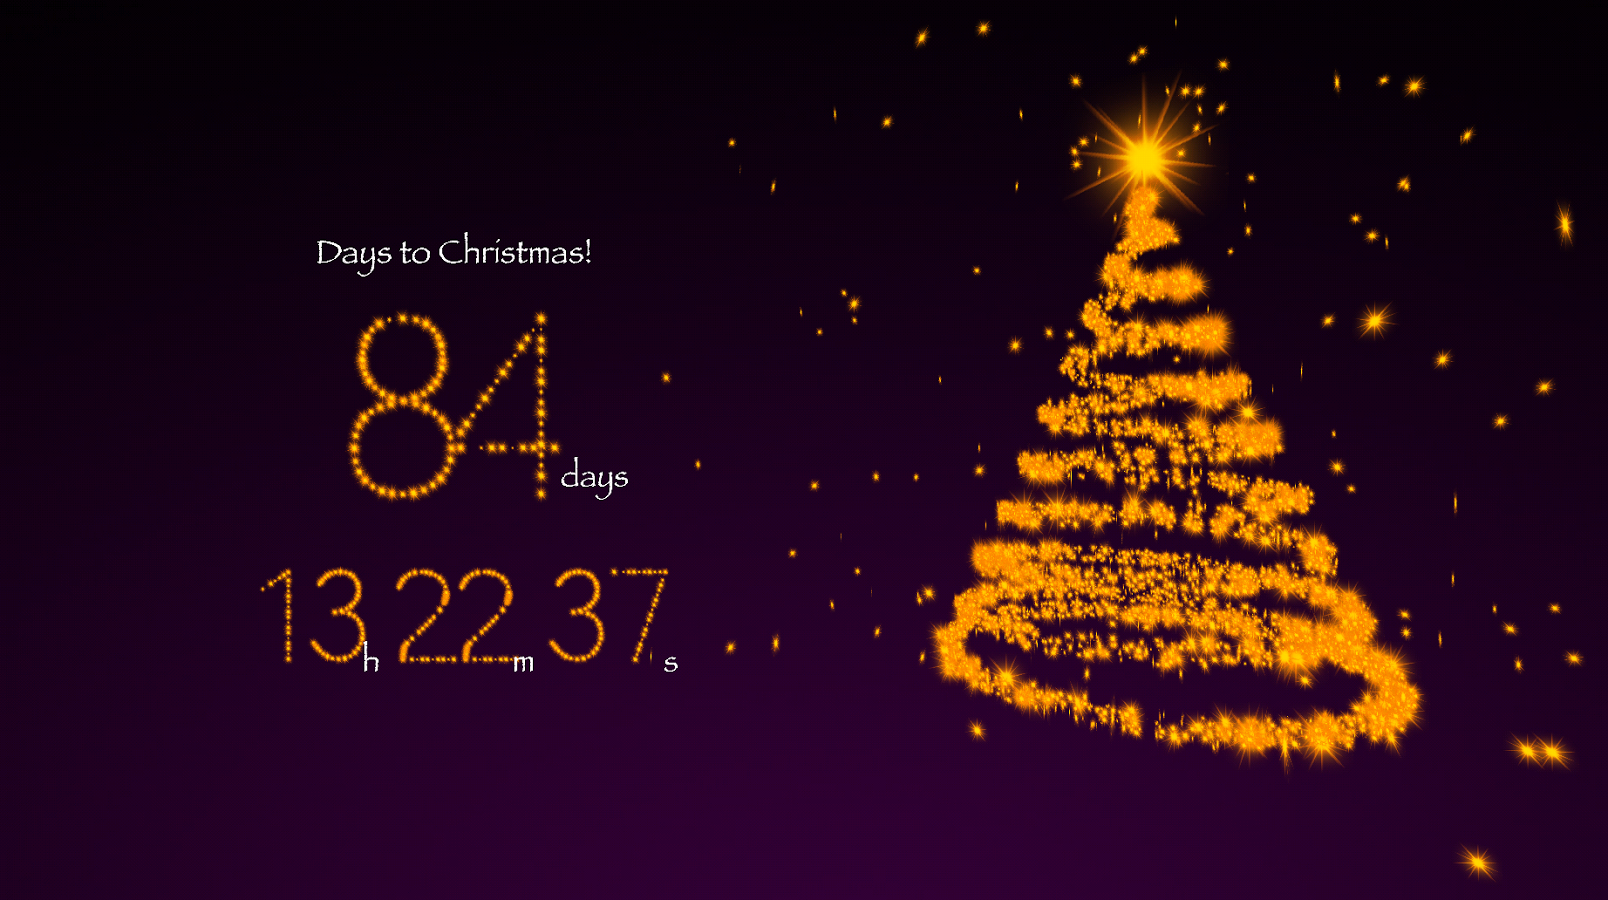 Tải miễn phí hình nền đếm ngược Giáng Sinh 2013 cho desktop: Giáng Sinh đang đến gần và bạn muốn tạo cảm giác tết tràn đầy trong không gian làm việc của mình? Tải ngay một hình nền đếm ngược Giáng Sinh 2013 cho desktop của bạn để đếm ngược thời gian đến ngày lễ tối thiểu ấn tượng nhất.